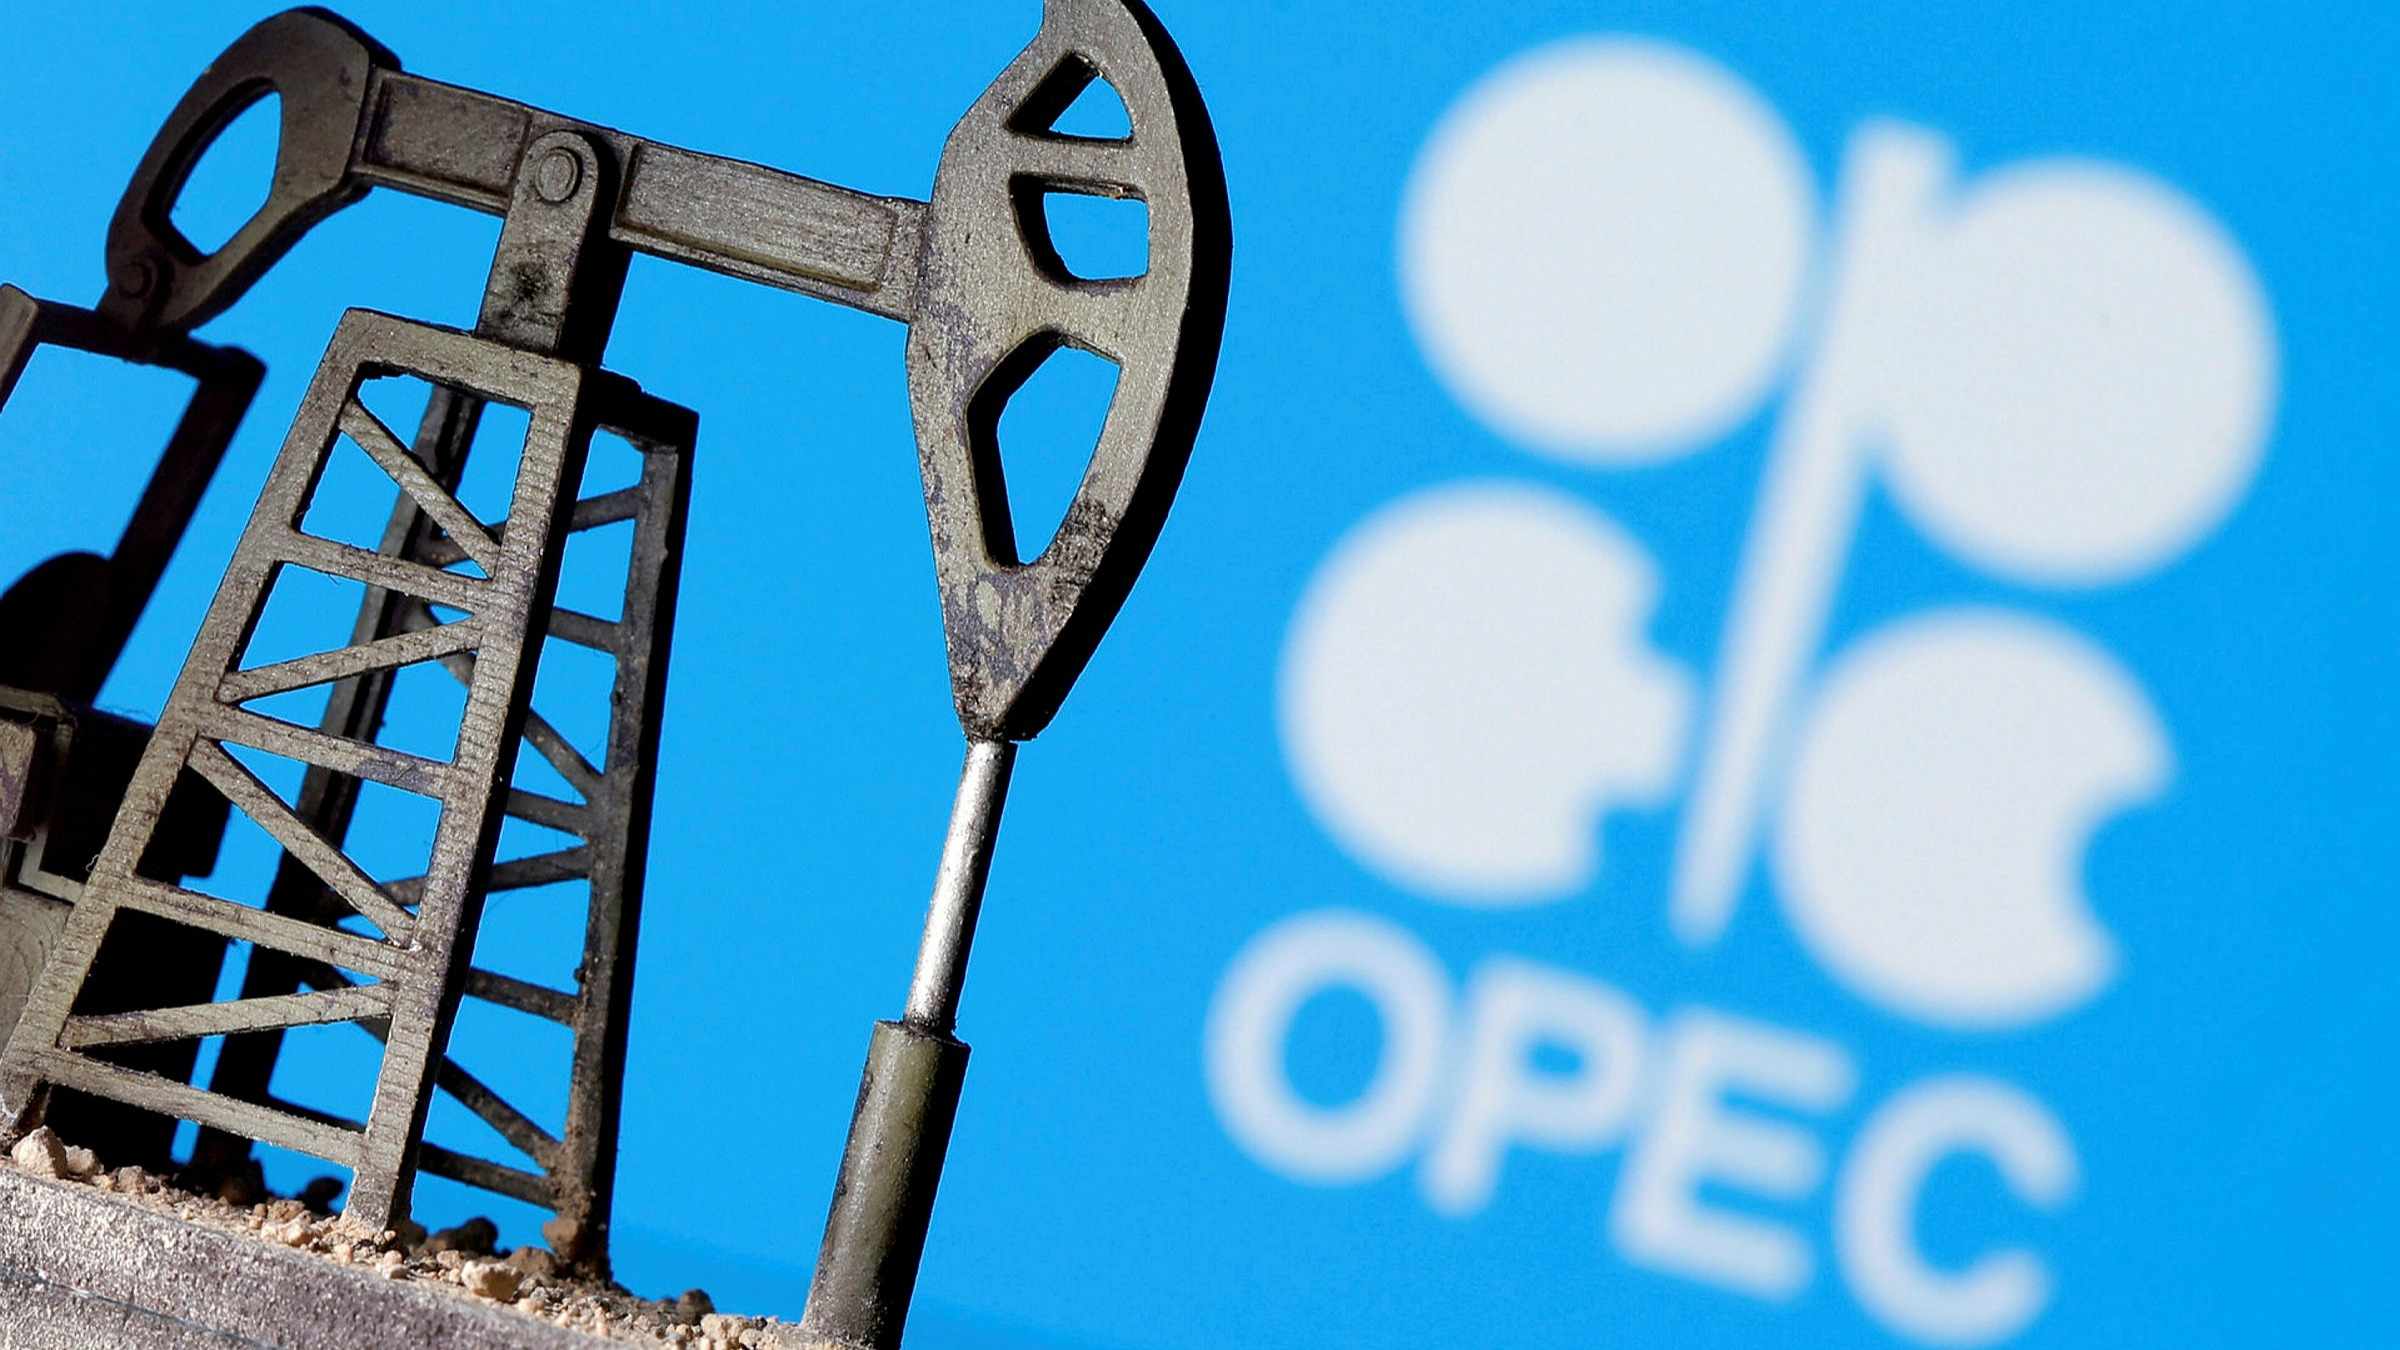 opec oil production reaches raise